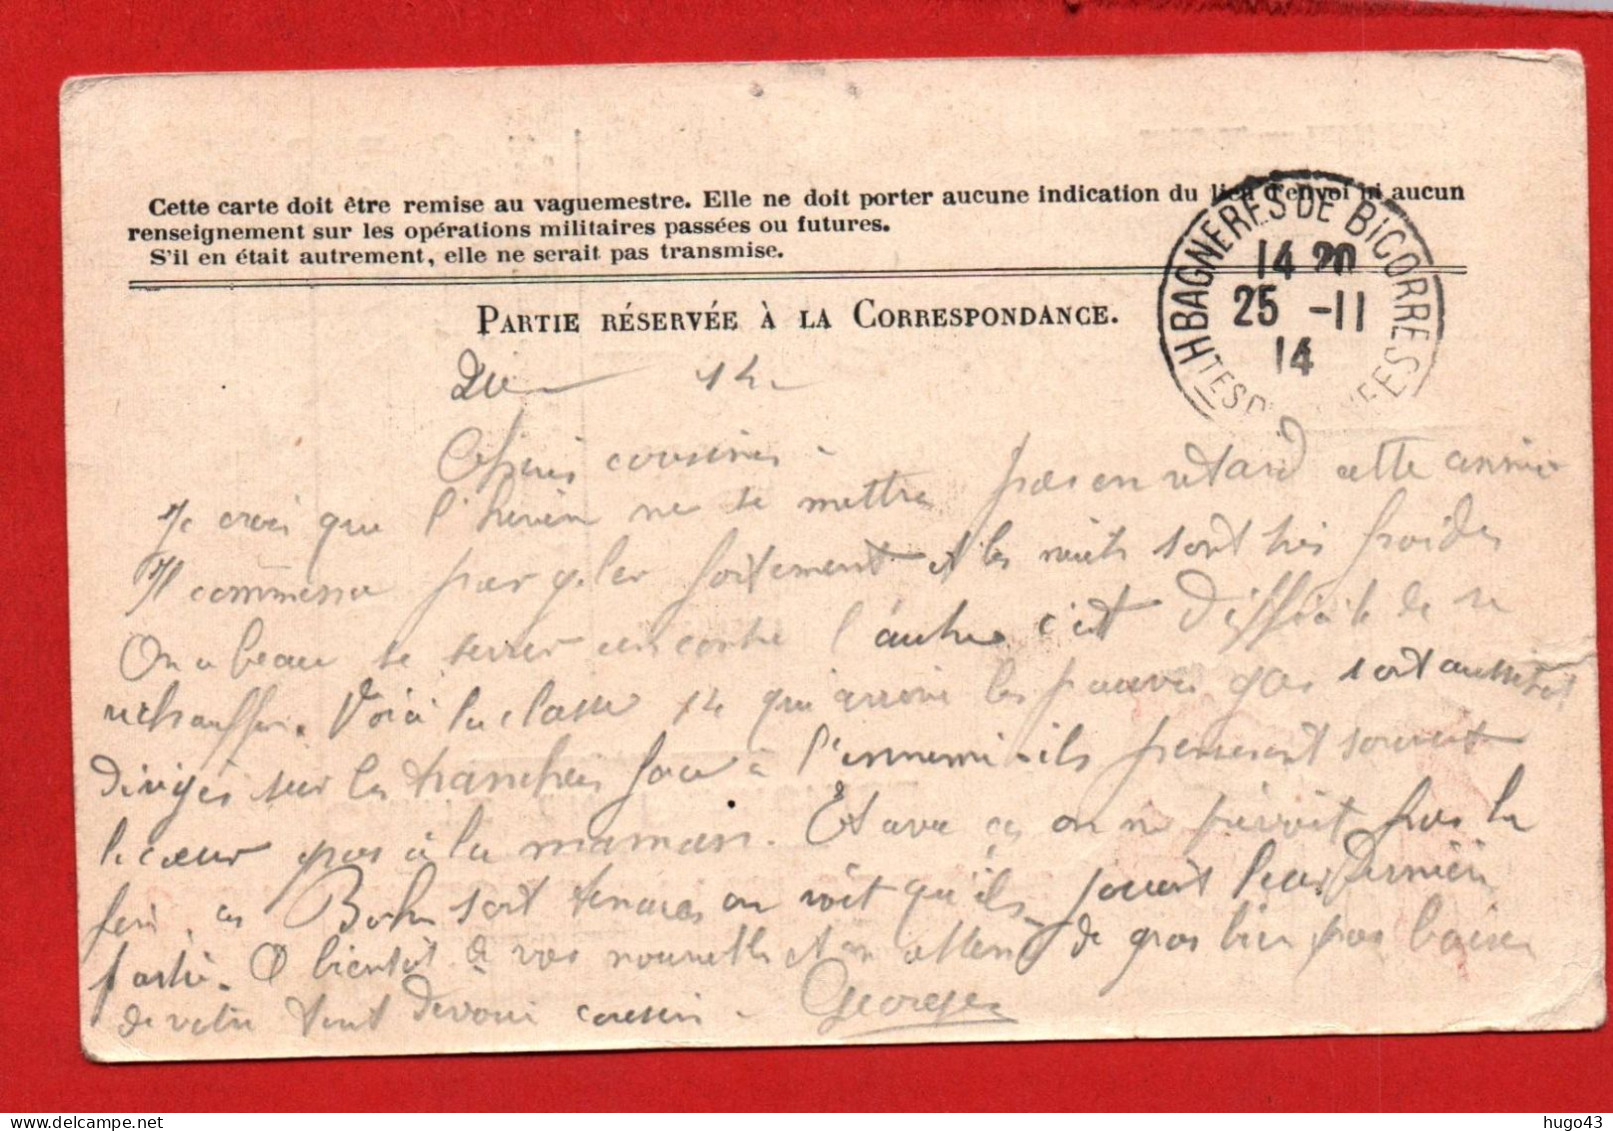 (RECTO / VERSO) CARTE - CORRESPONDANCE DES ARMEES DE LA REPUBLIQUE LE 29/11/1914 - COULEUR - Covers & Documents